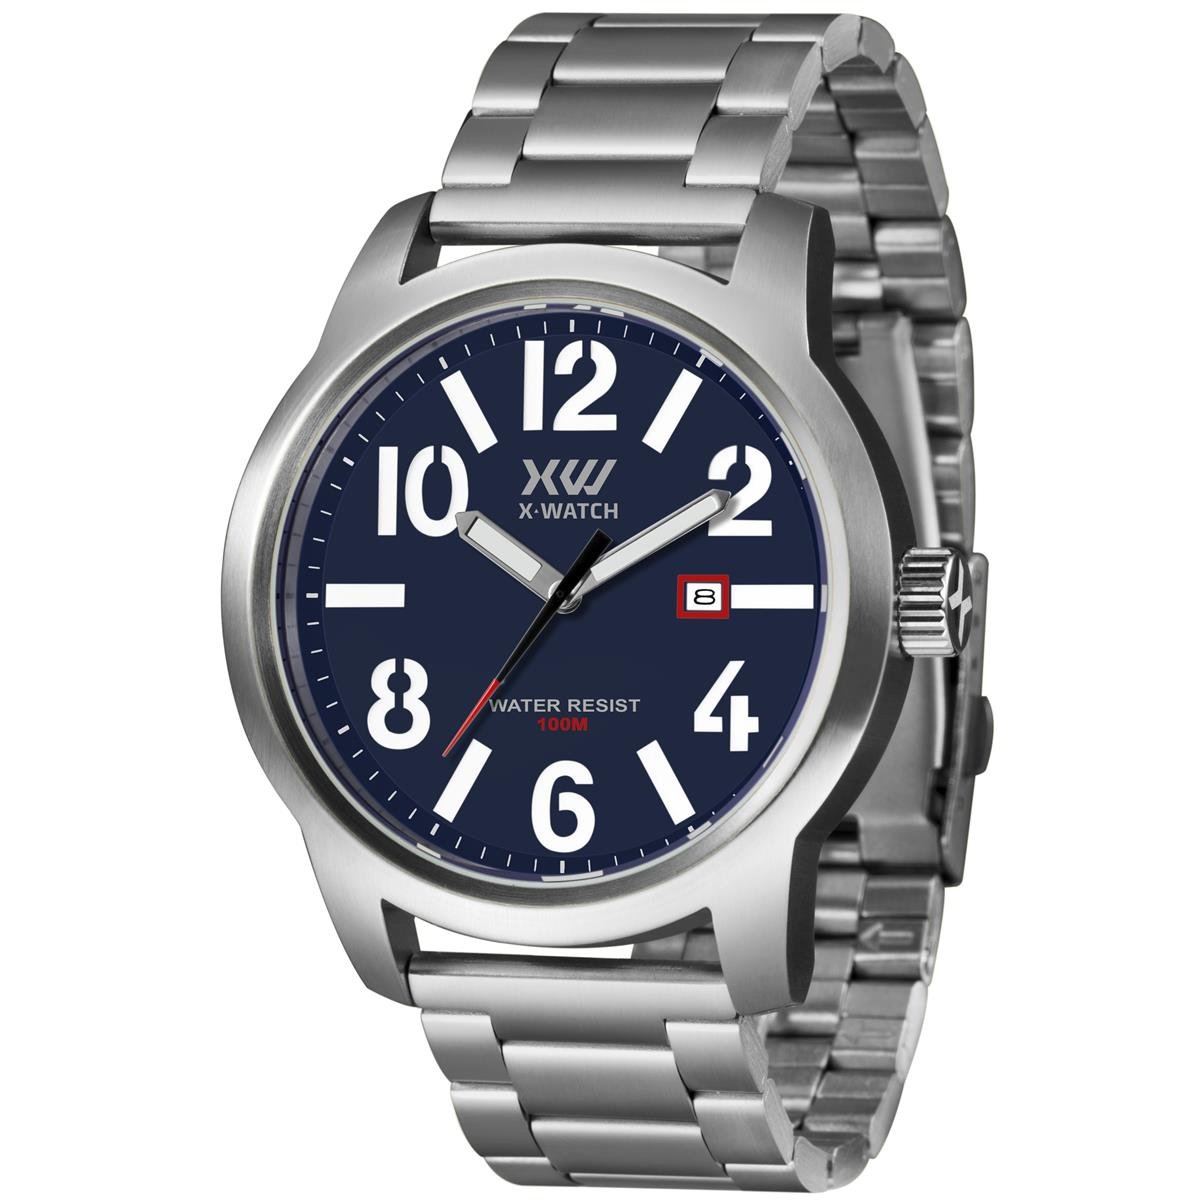 Relógio X-Watch Masculino Ref: Xfss1001 D2sx Esportivo Prateado Prata 1